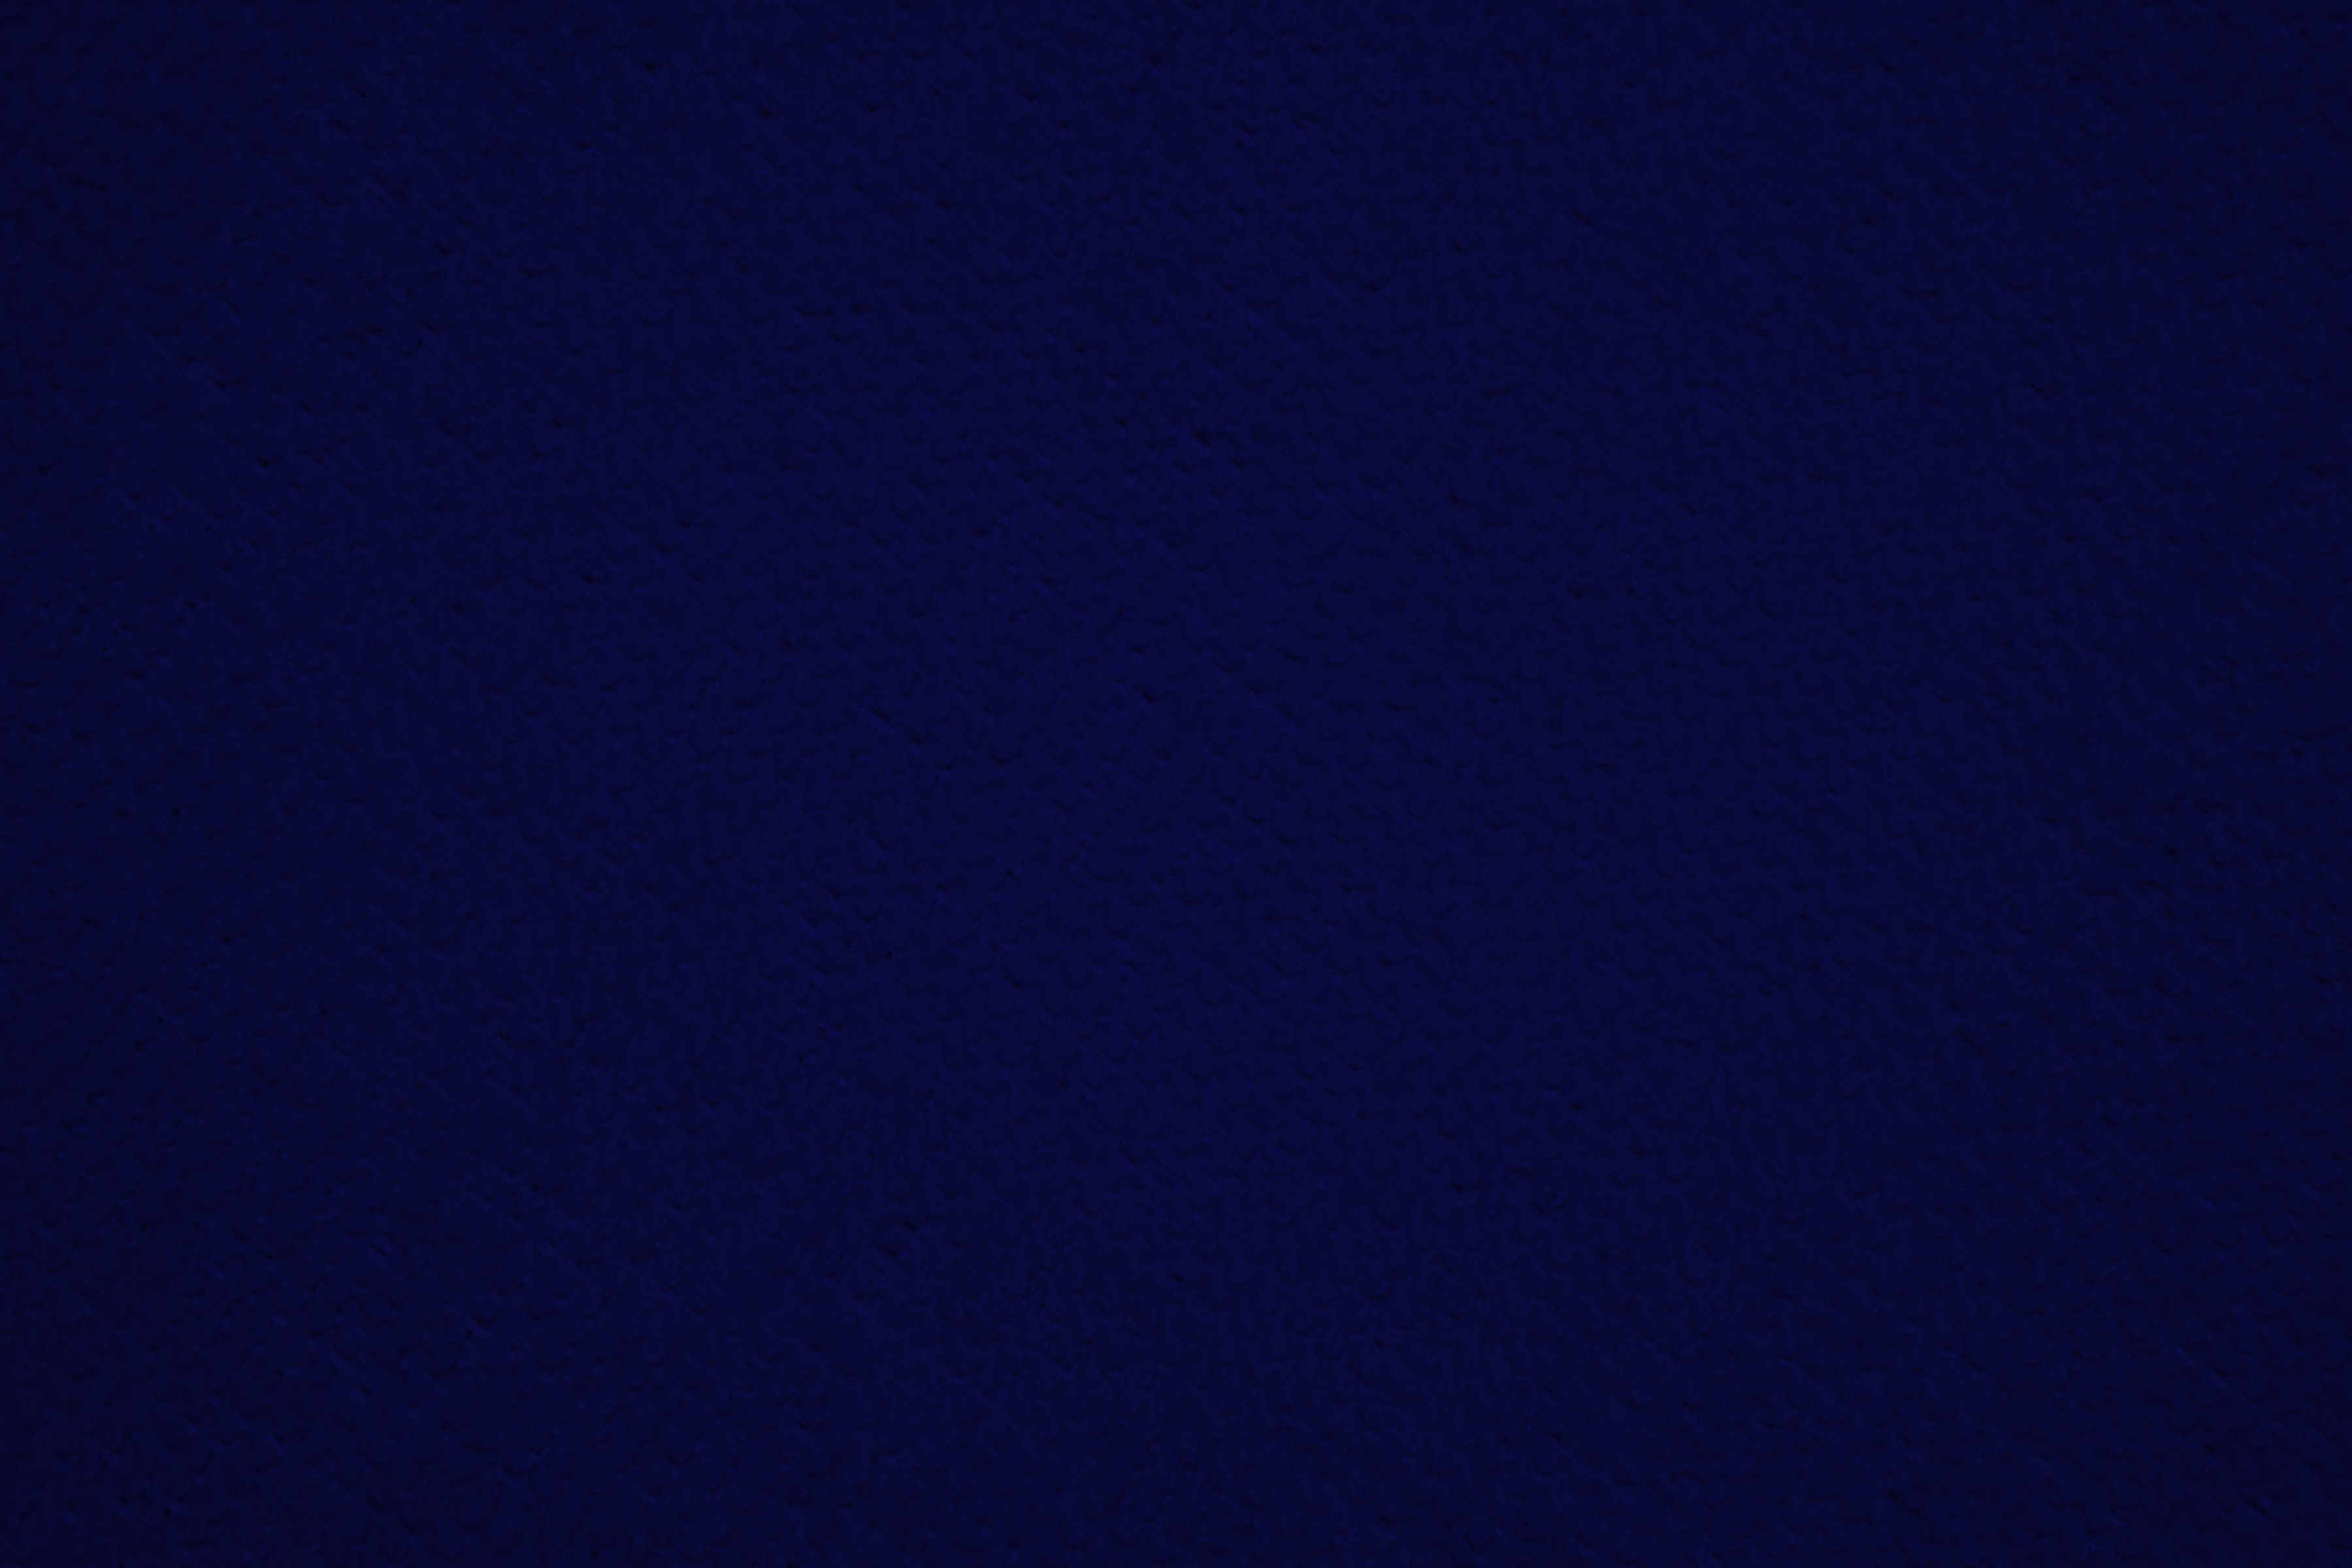 41+] Solid Navy Blue Wallpaper Border - WallpaperSafari